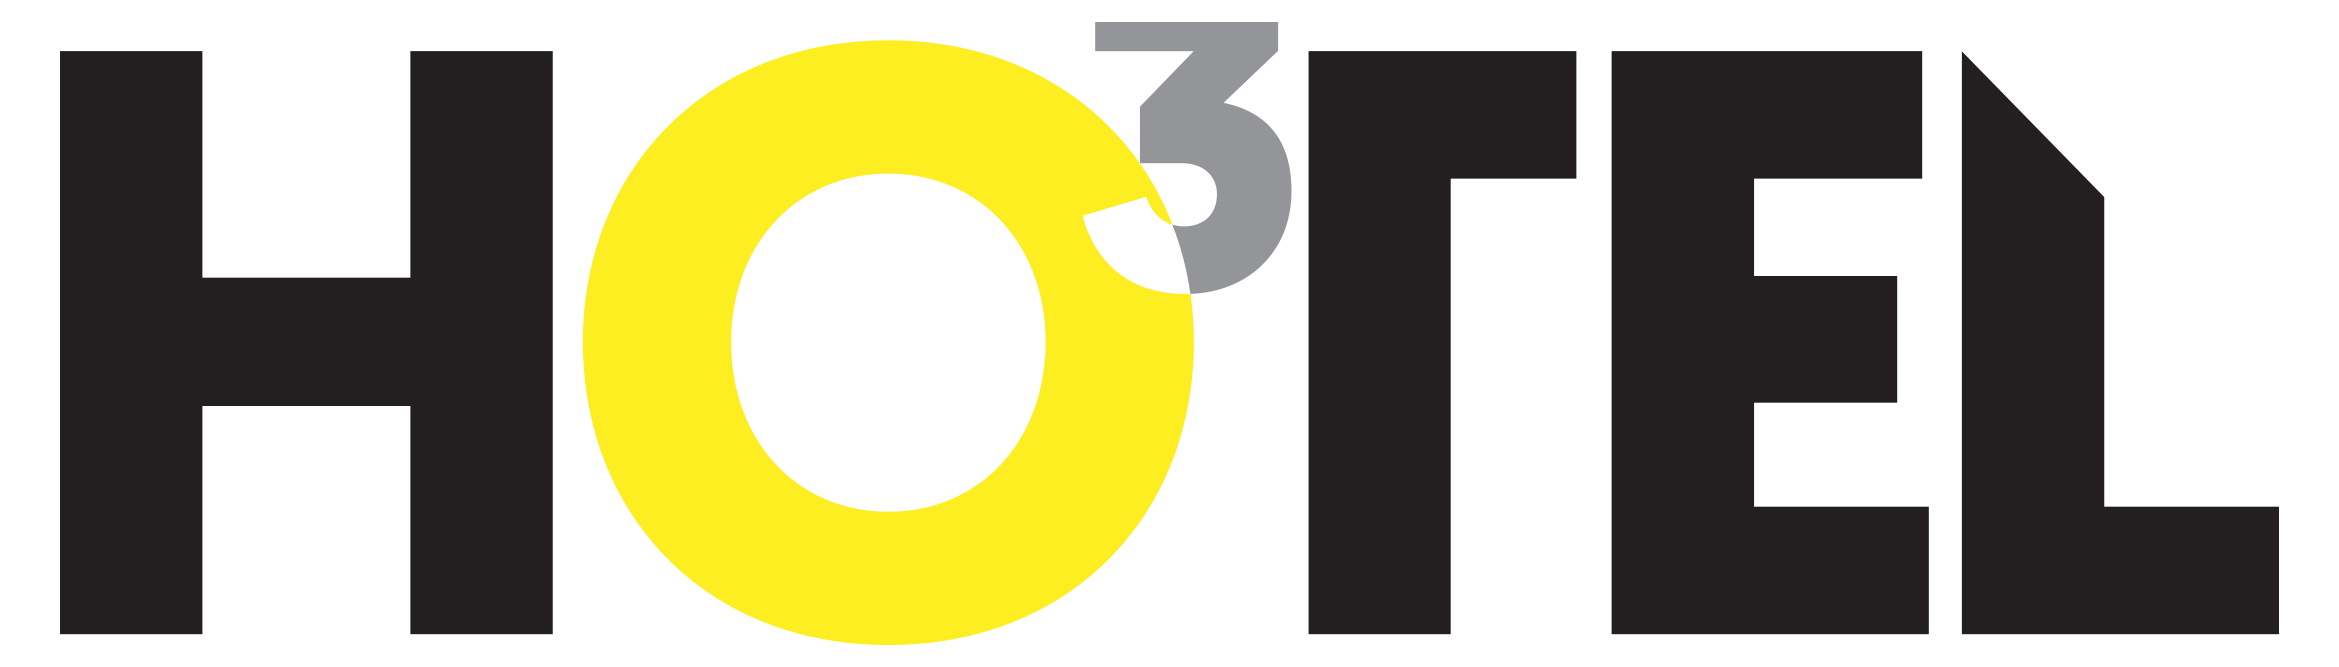 o3Hotel logotyp